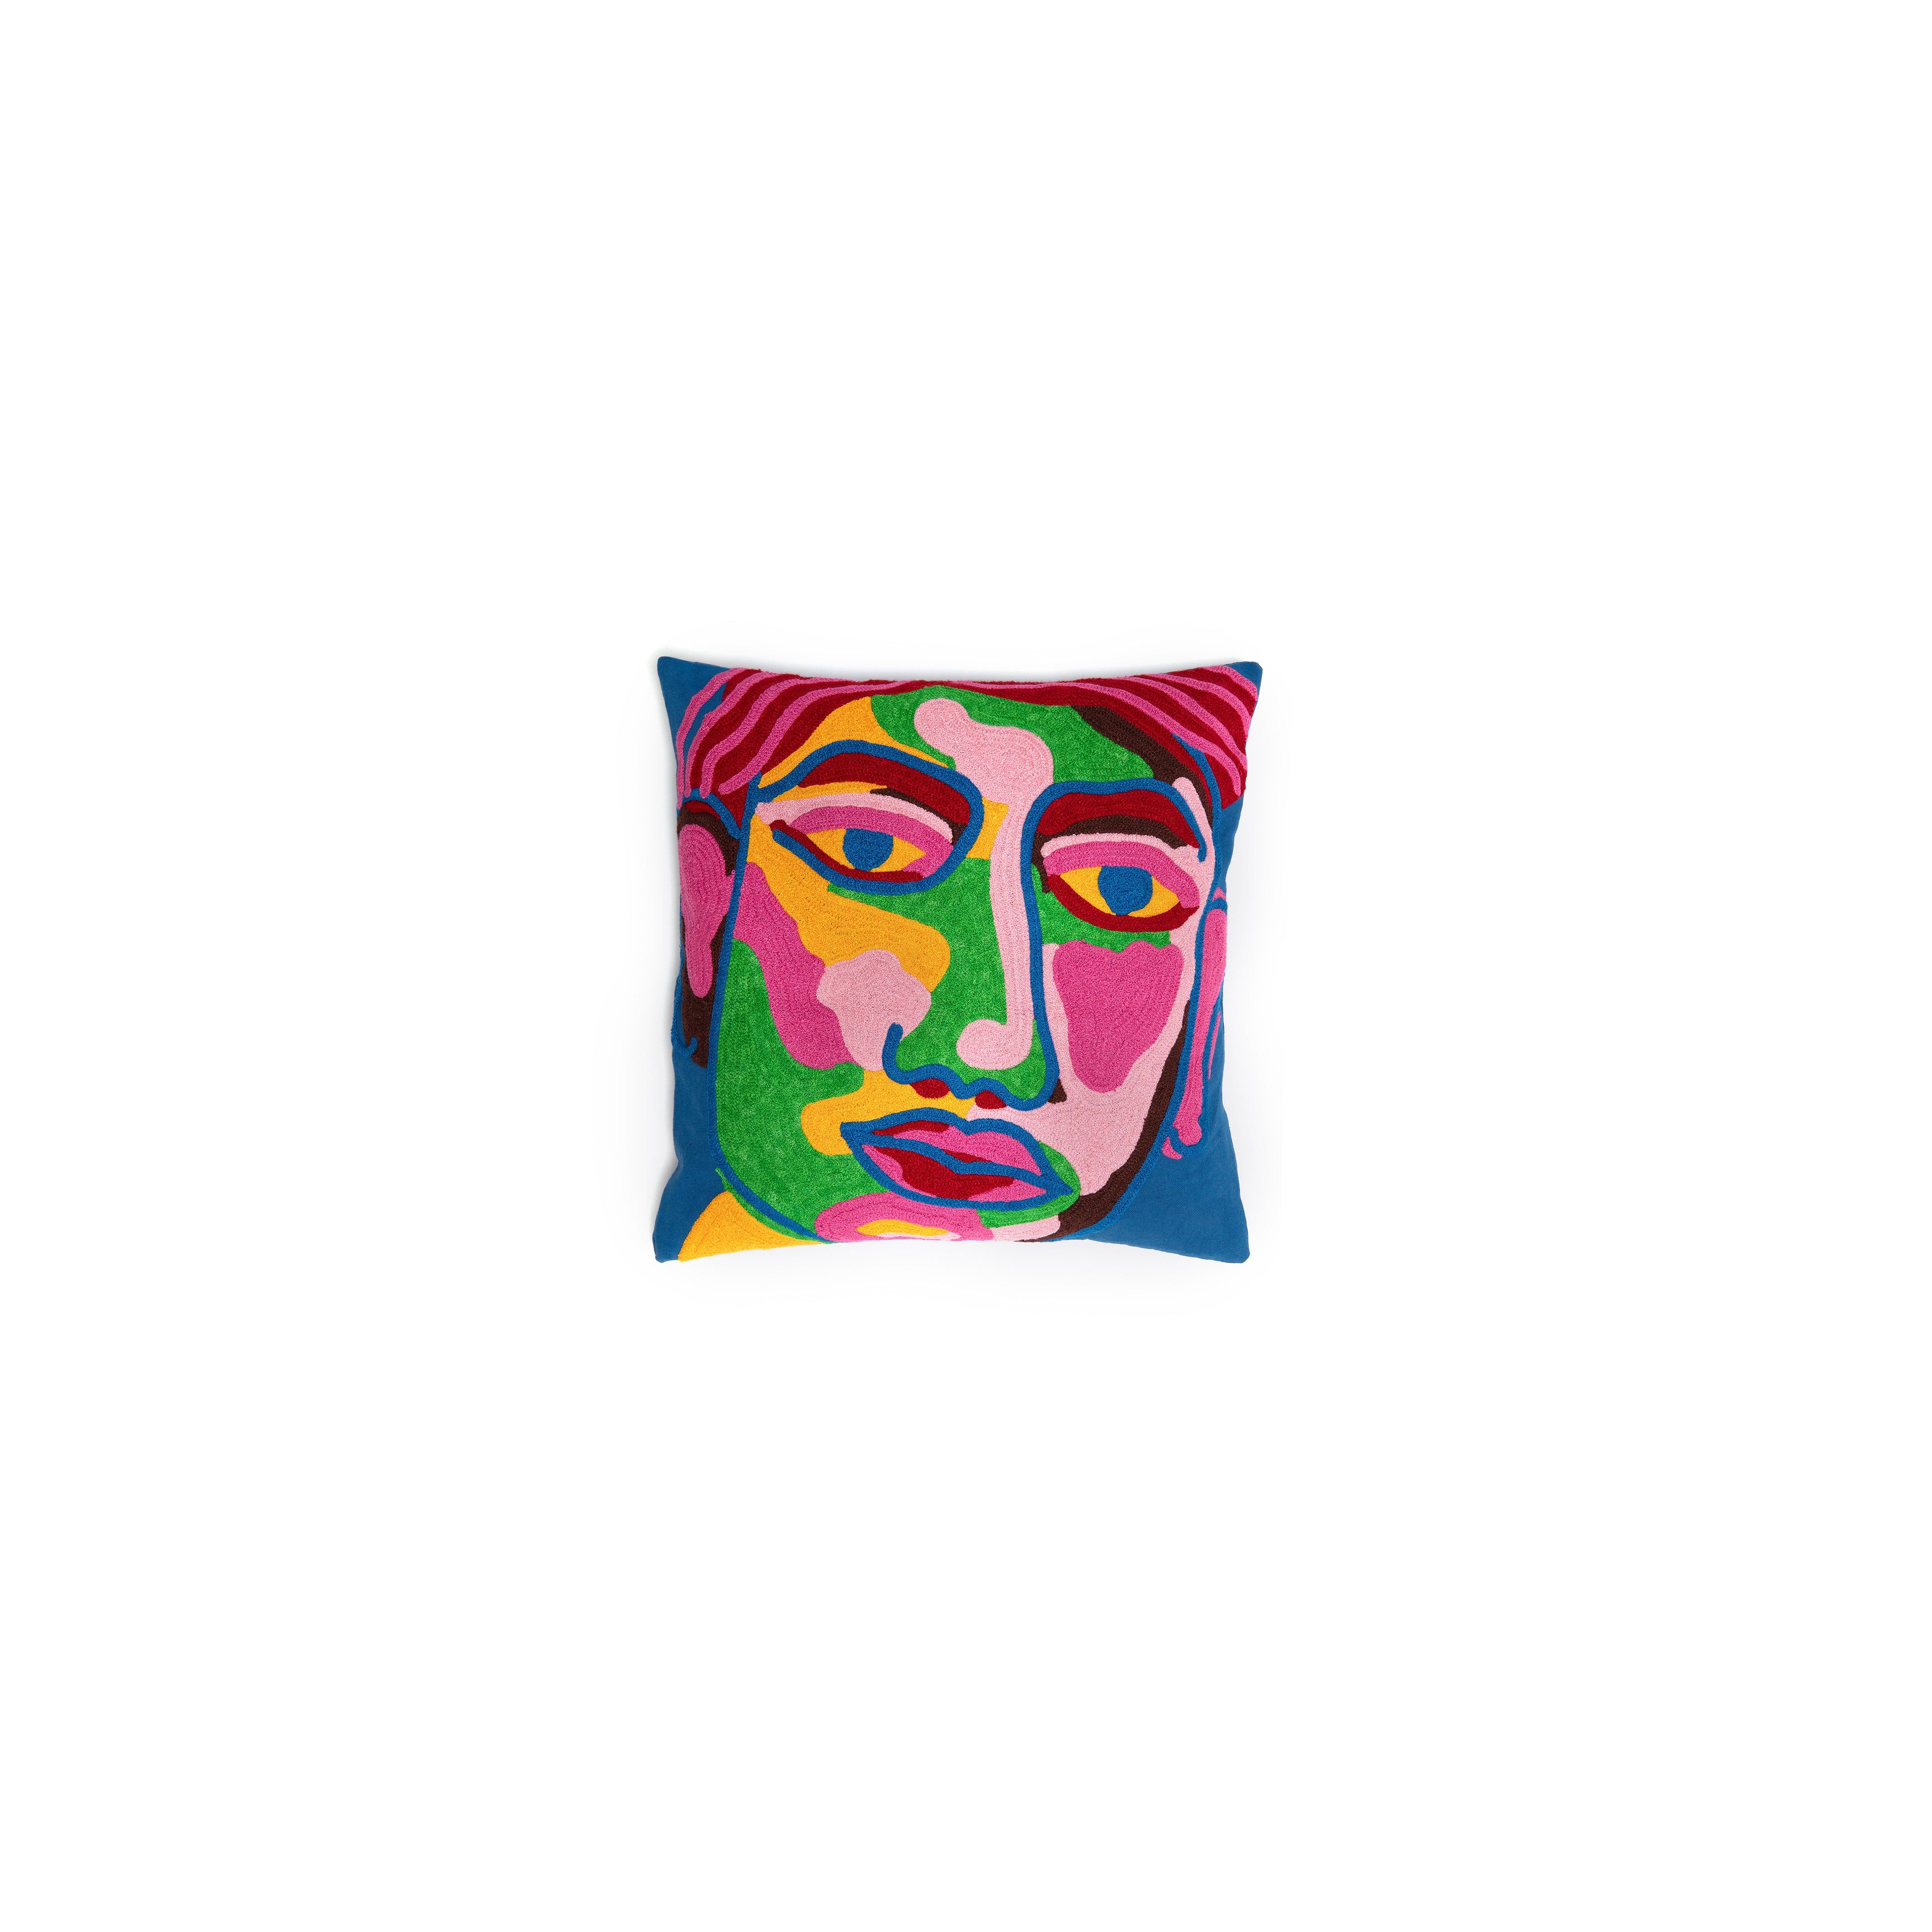 Portrait Pillow Cover